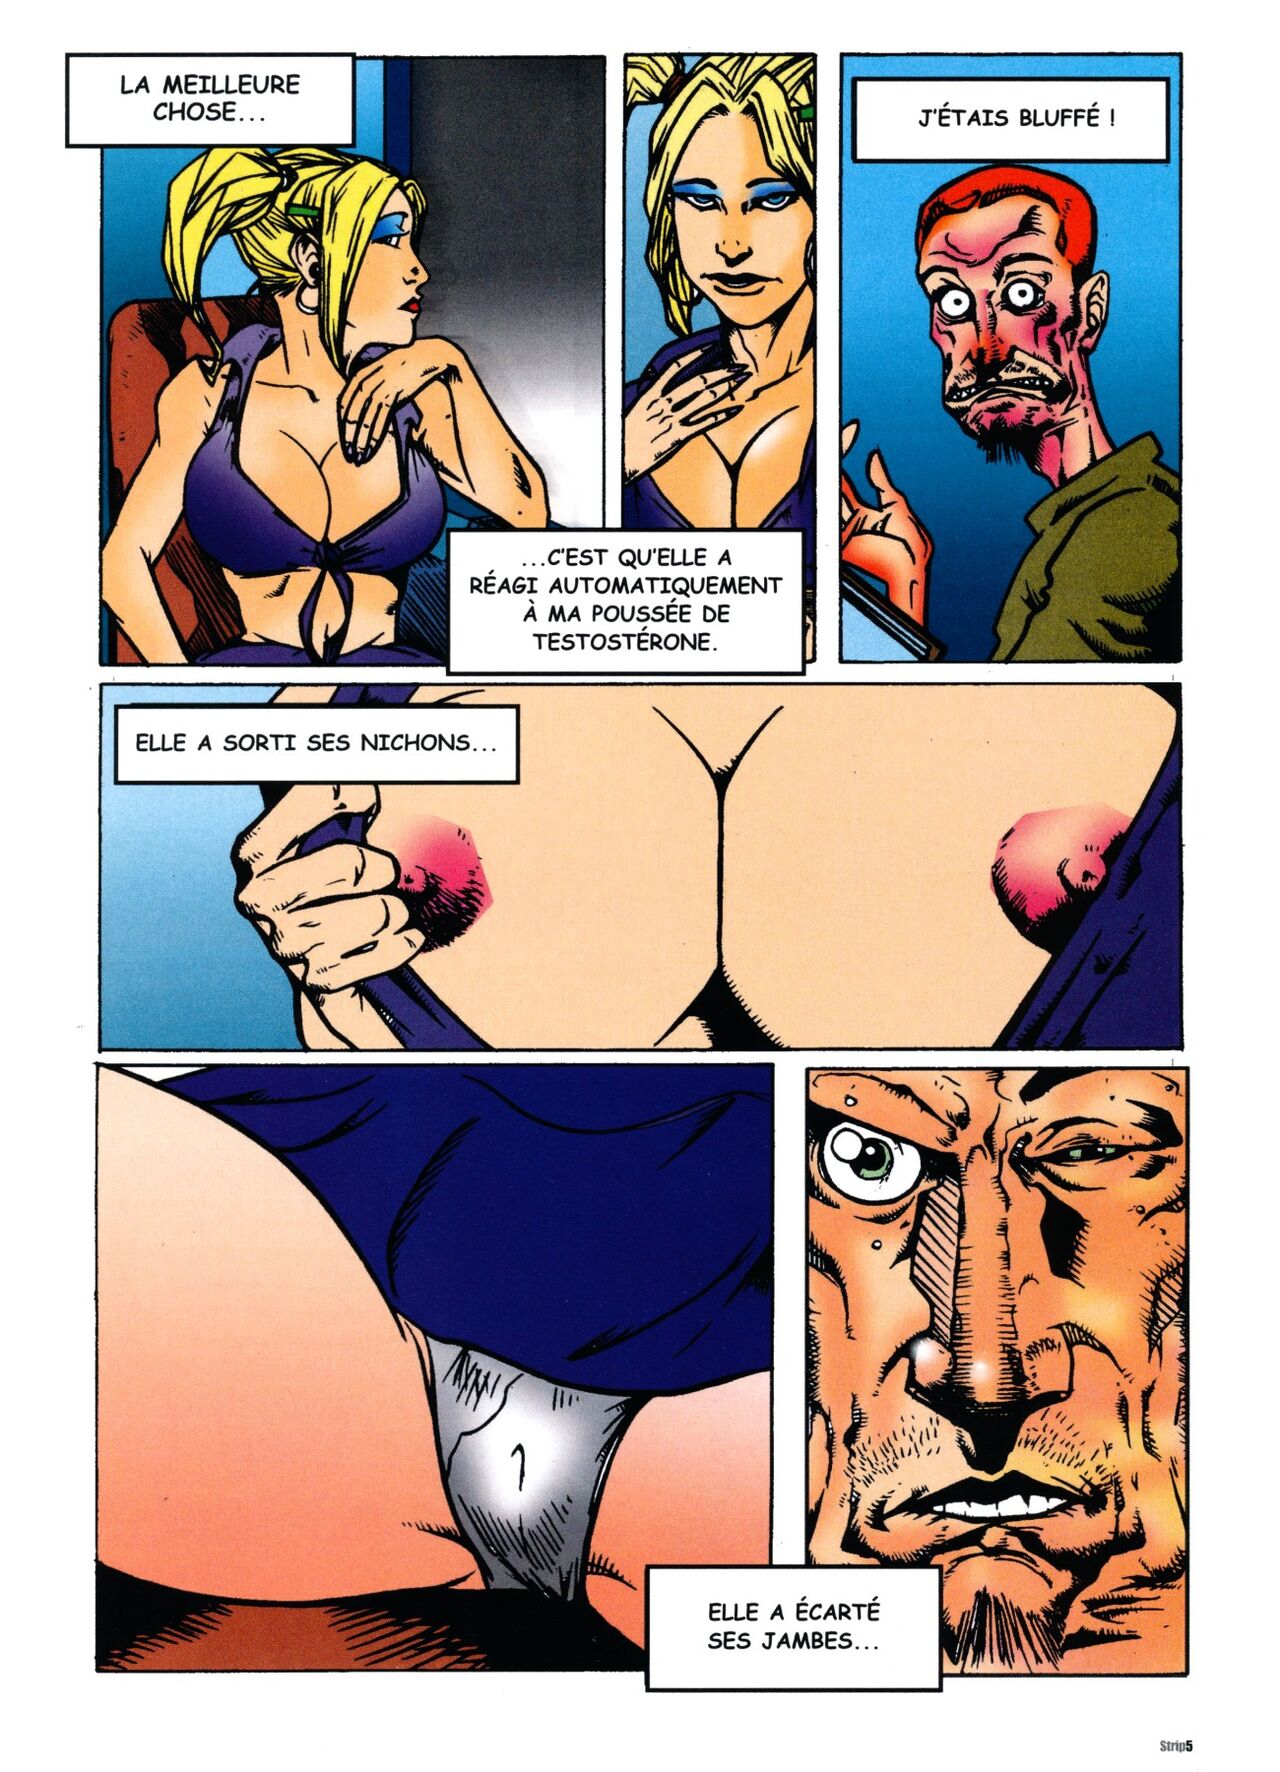 Bande dessinée porno en français